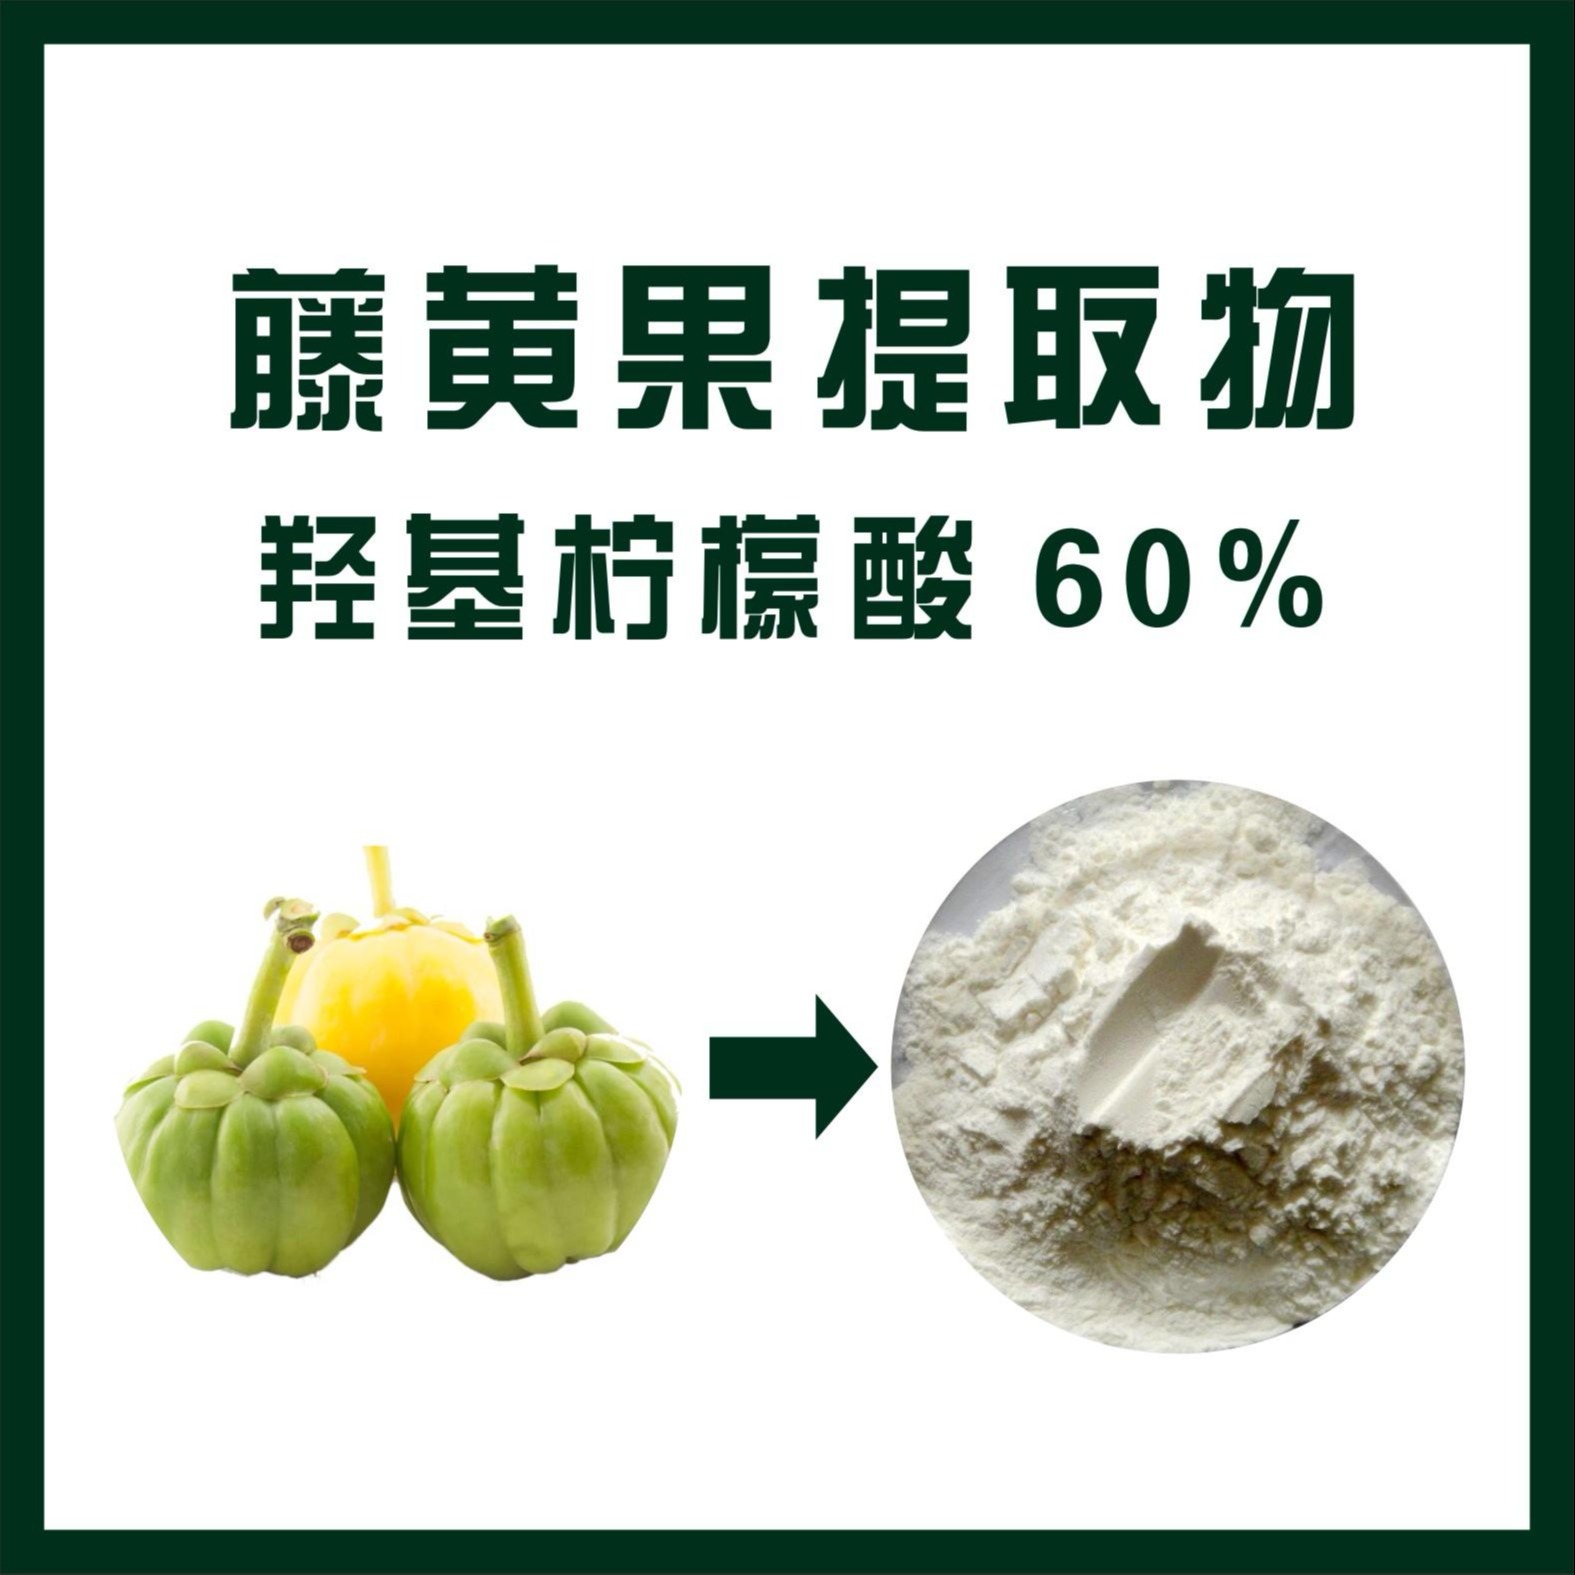 现货供应 藤黄果提取物  羟基柠檬酸60% 进口原料